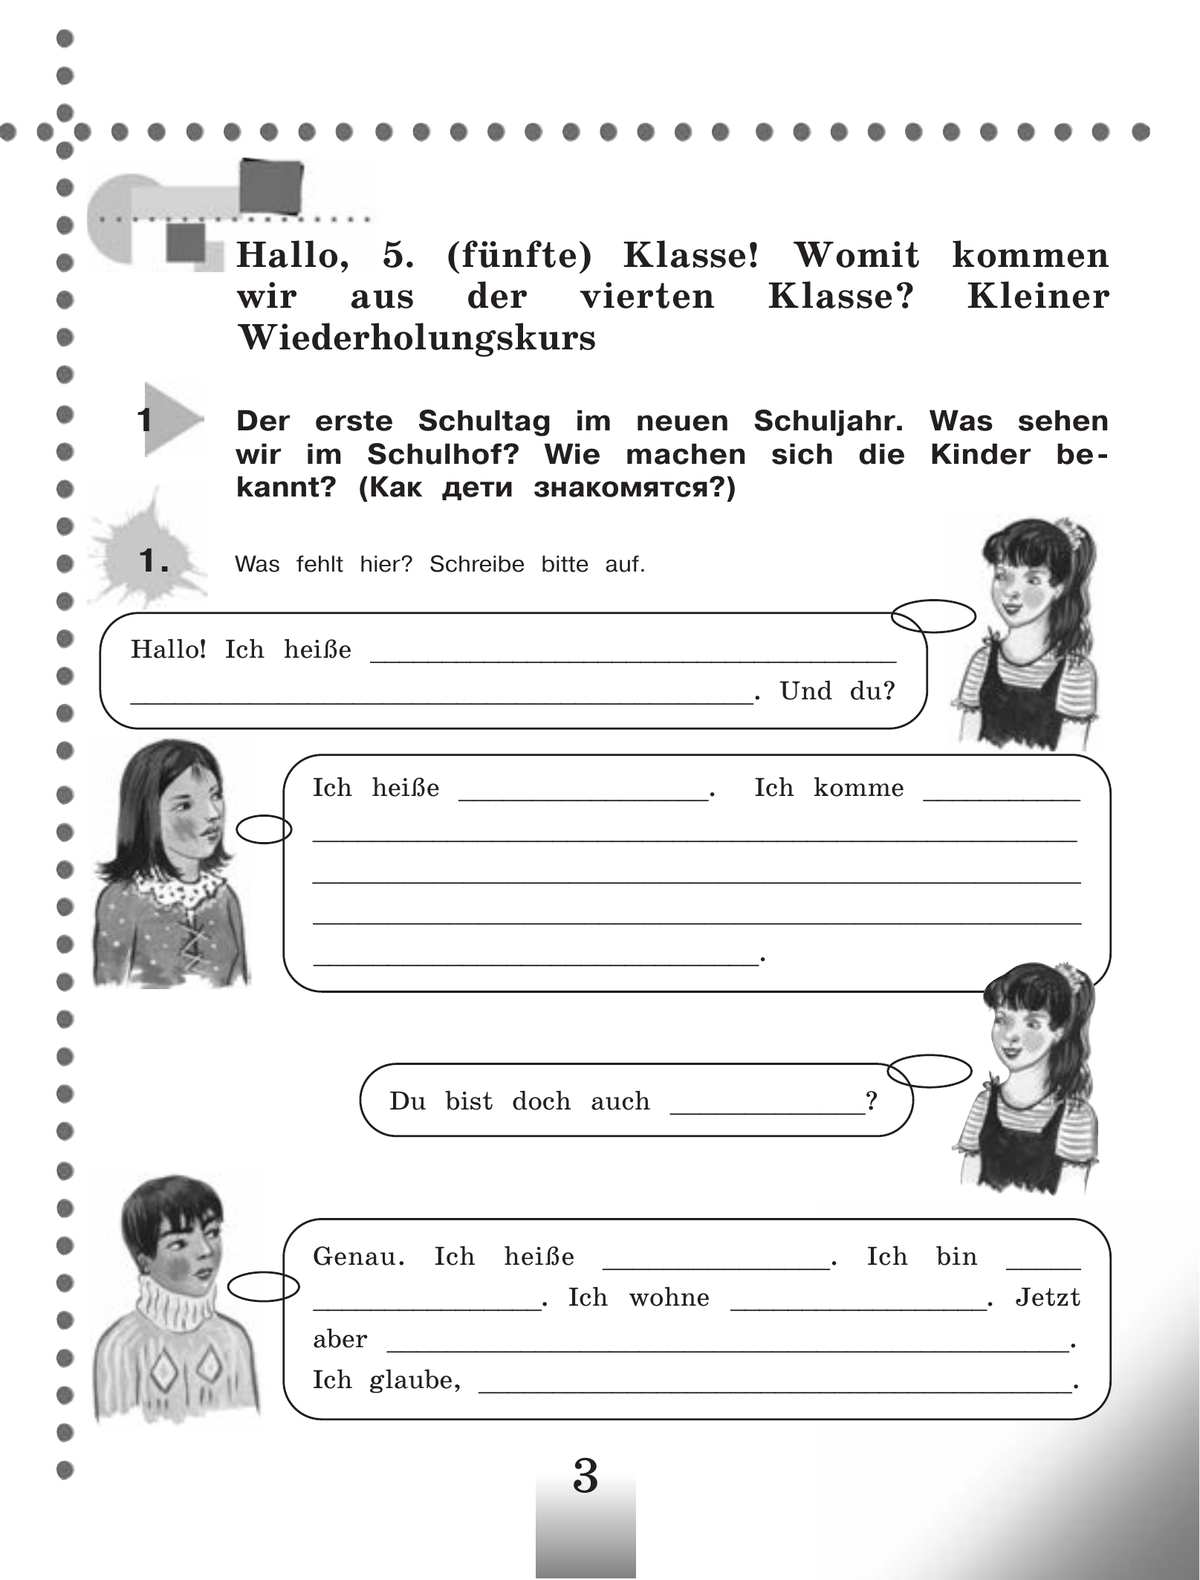 Немецкий язык. Рабочая тетрадь. 5 класс 10